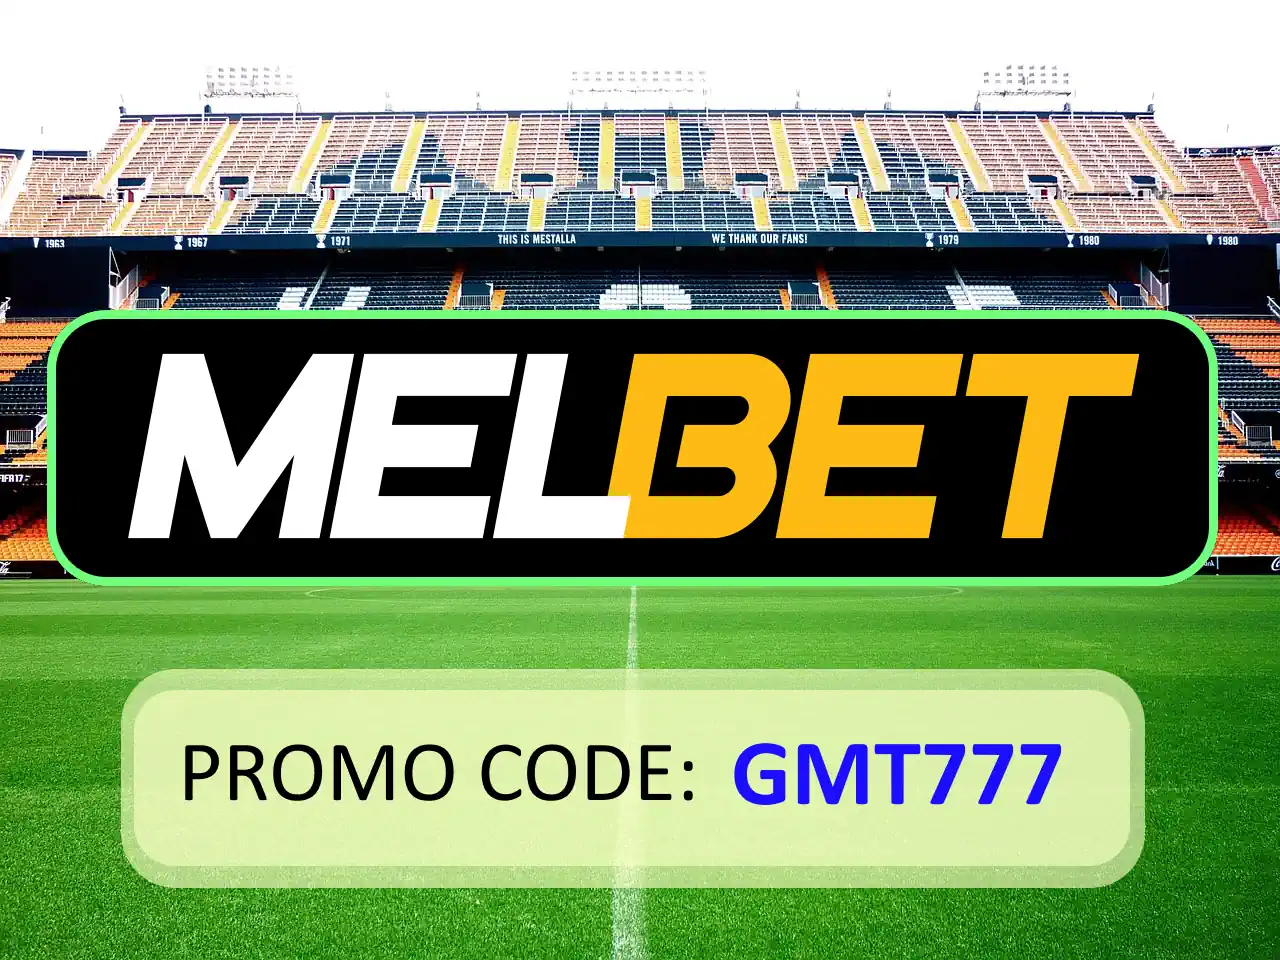 Melbet Promo Code For Registration: GMT777